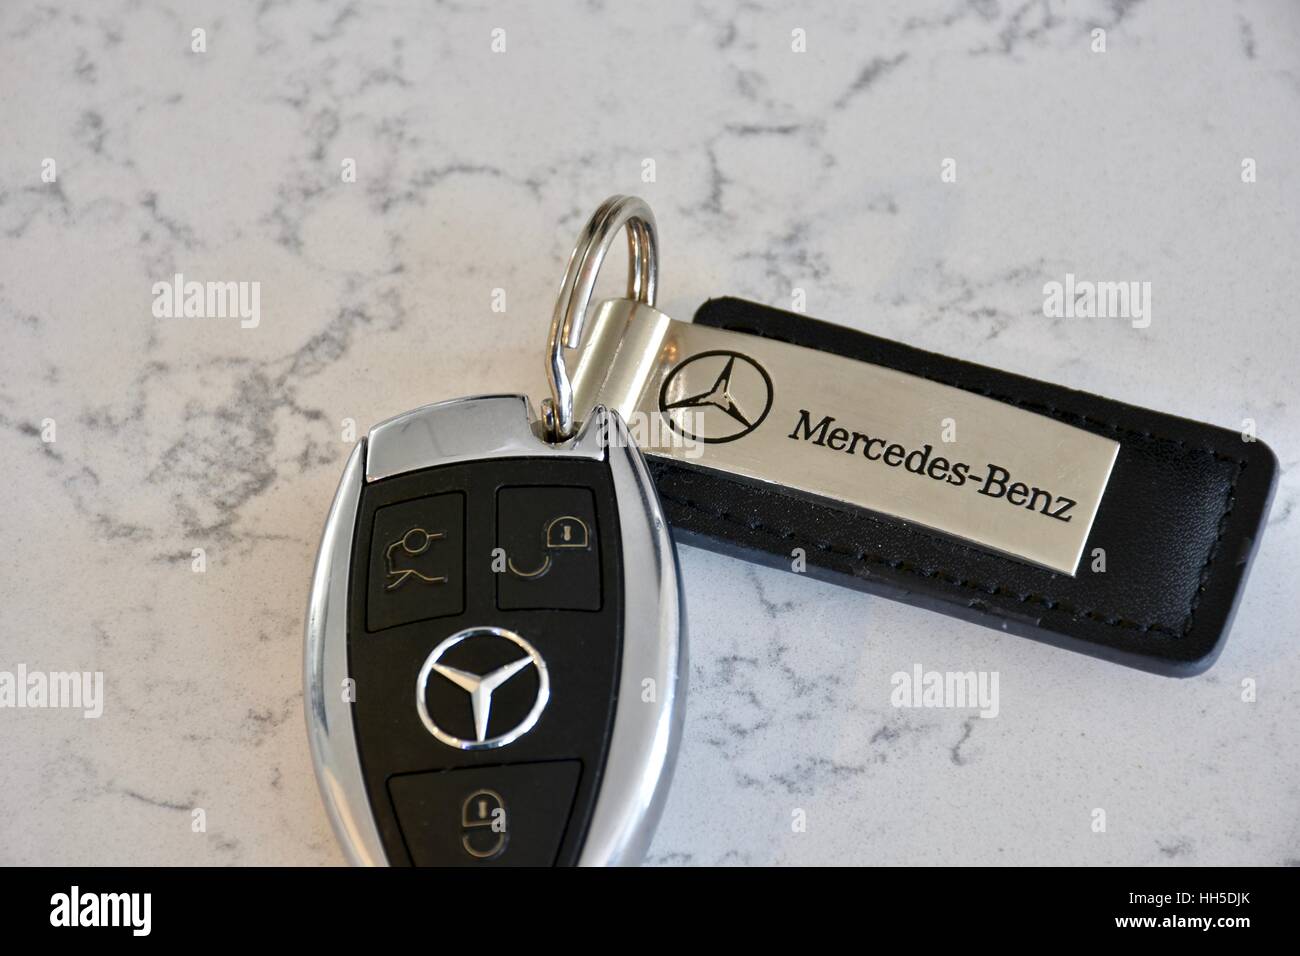 Mercedes Benz Schlüsselanhänger auf einer weißen Marmor Oberfläche